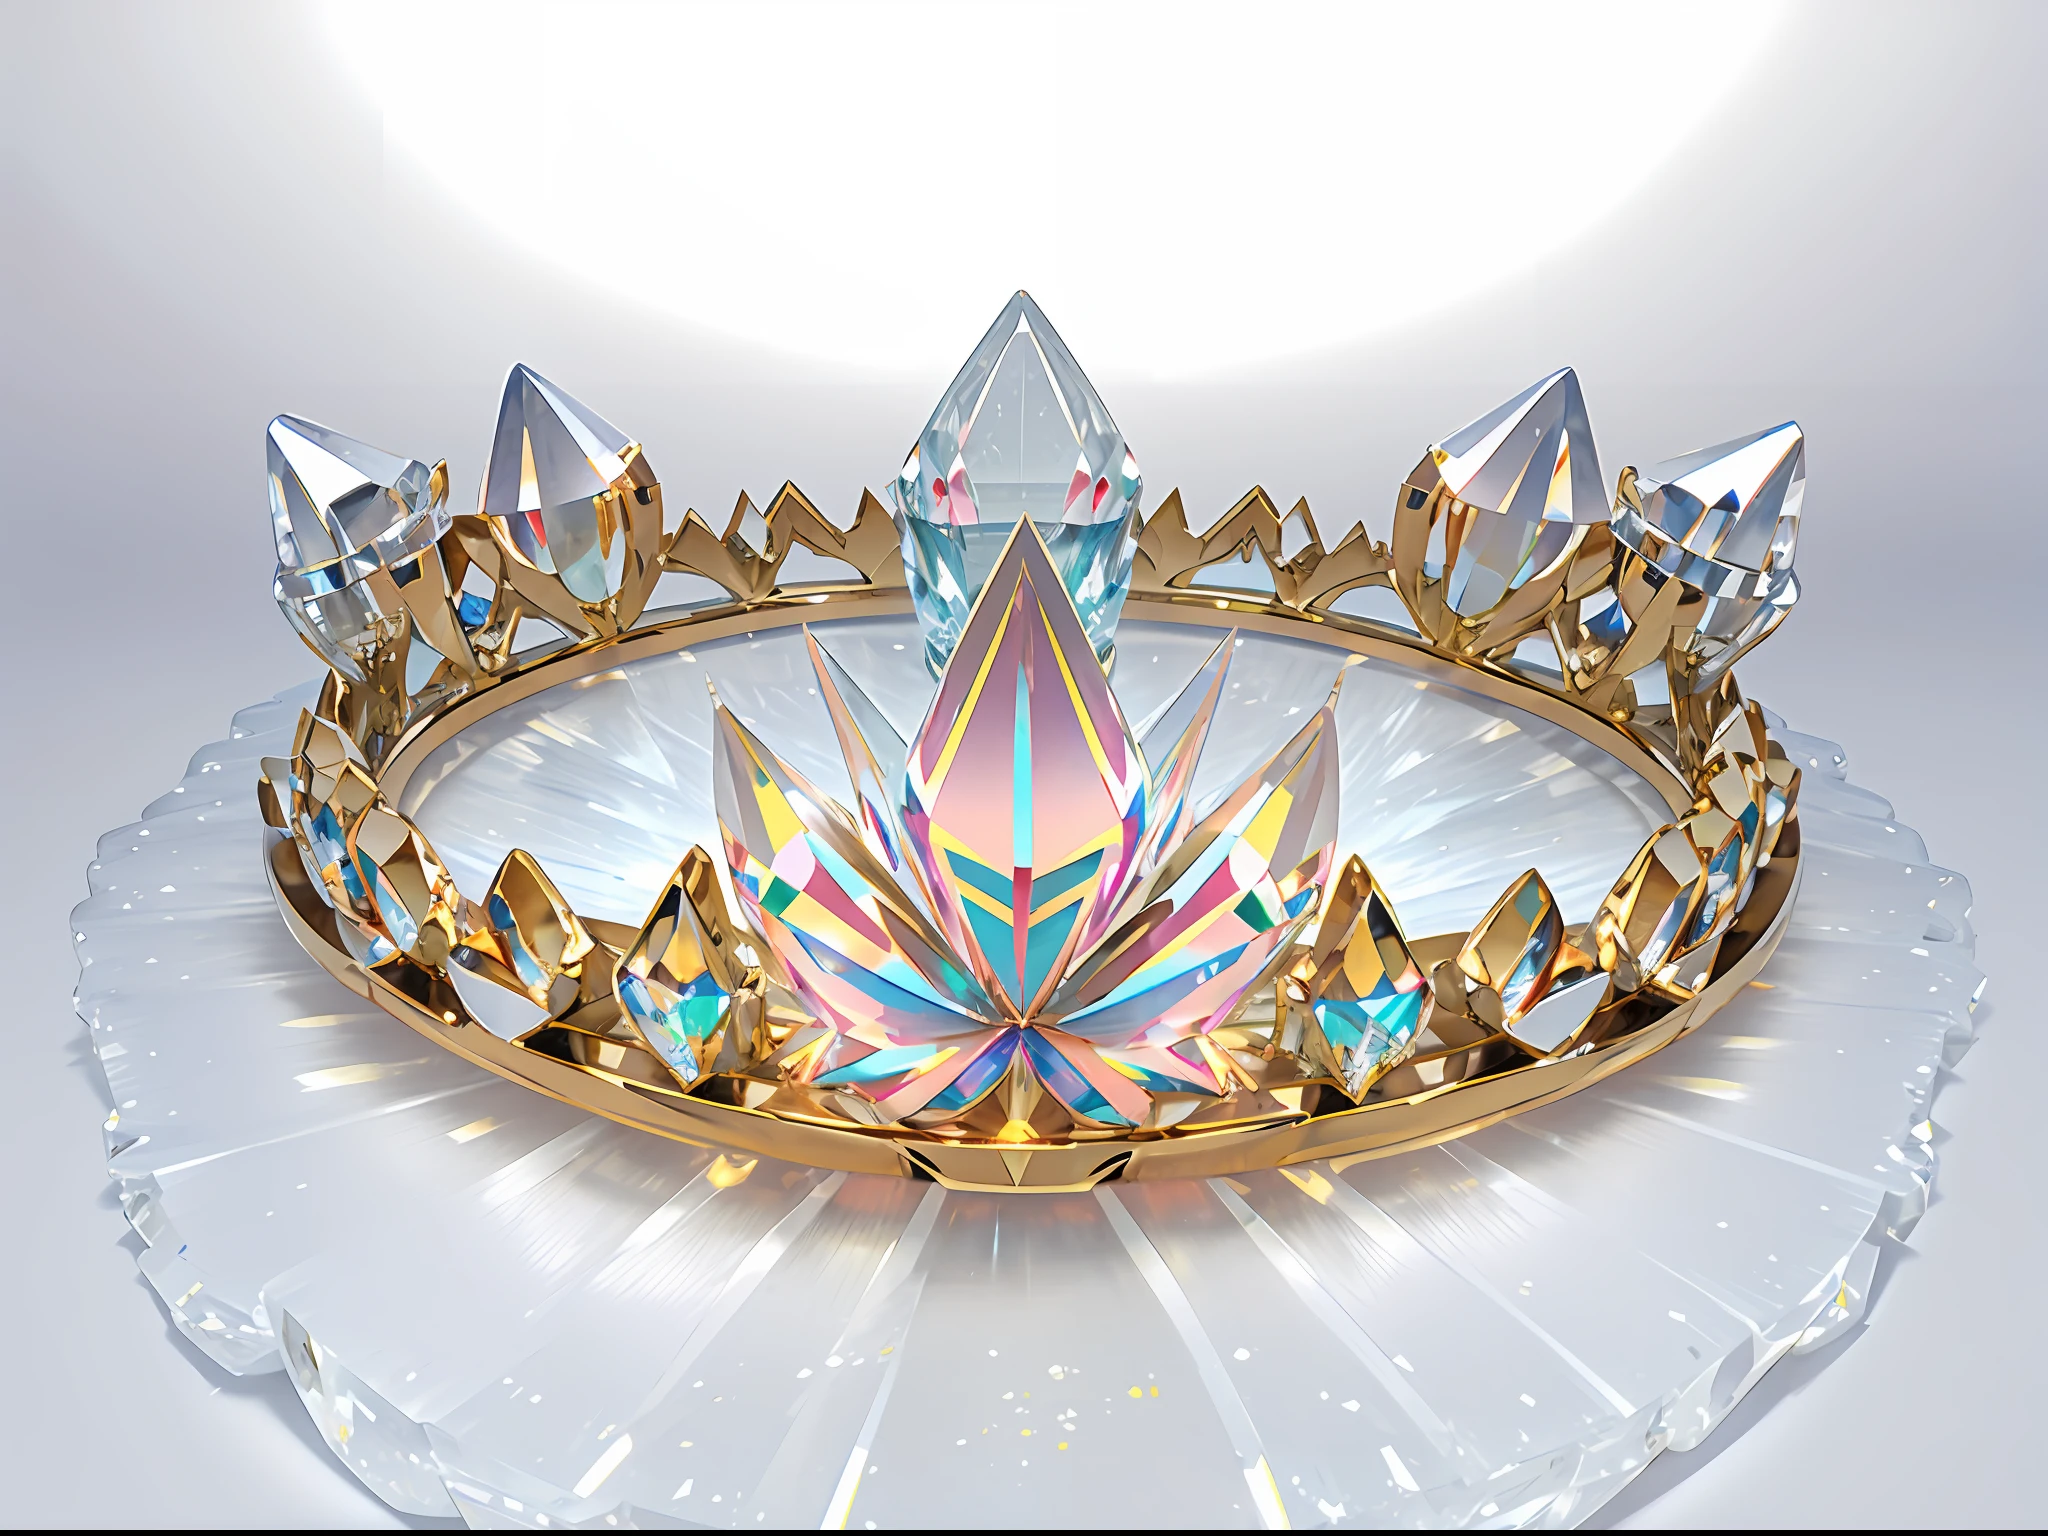 8k, (gros plan de la couronne), point de vue positif!! , avec une couronne de diamants sur fond blanc, ailes de diamant!! ,(((((Ring couronne)))),(White couronne))))),(Cristal blanc)))),((Left and Right Symmetrical couronne)),(Slender couronne)))),(lignes douces)),Gorgeous and coloré,(((coloré)), Diamants complexes, Ultra-realistic Fantasy couronne, Crystal couronne, Crystal couronne, White Laser couronne, Corolle de cristal, Floating couronne, (tracé laser), ((fond propre)), couronne, Flower couronne, couronne, Giant Diamond couronne, Coiffe en diamant, superbe couronne de fleurs, couronne de diamant --auto --s2